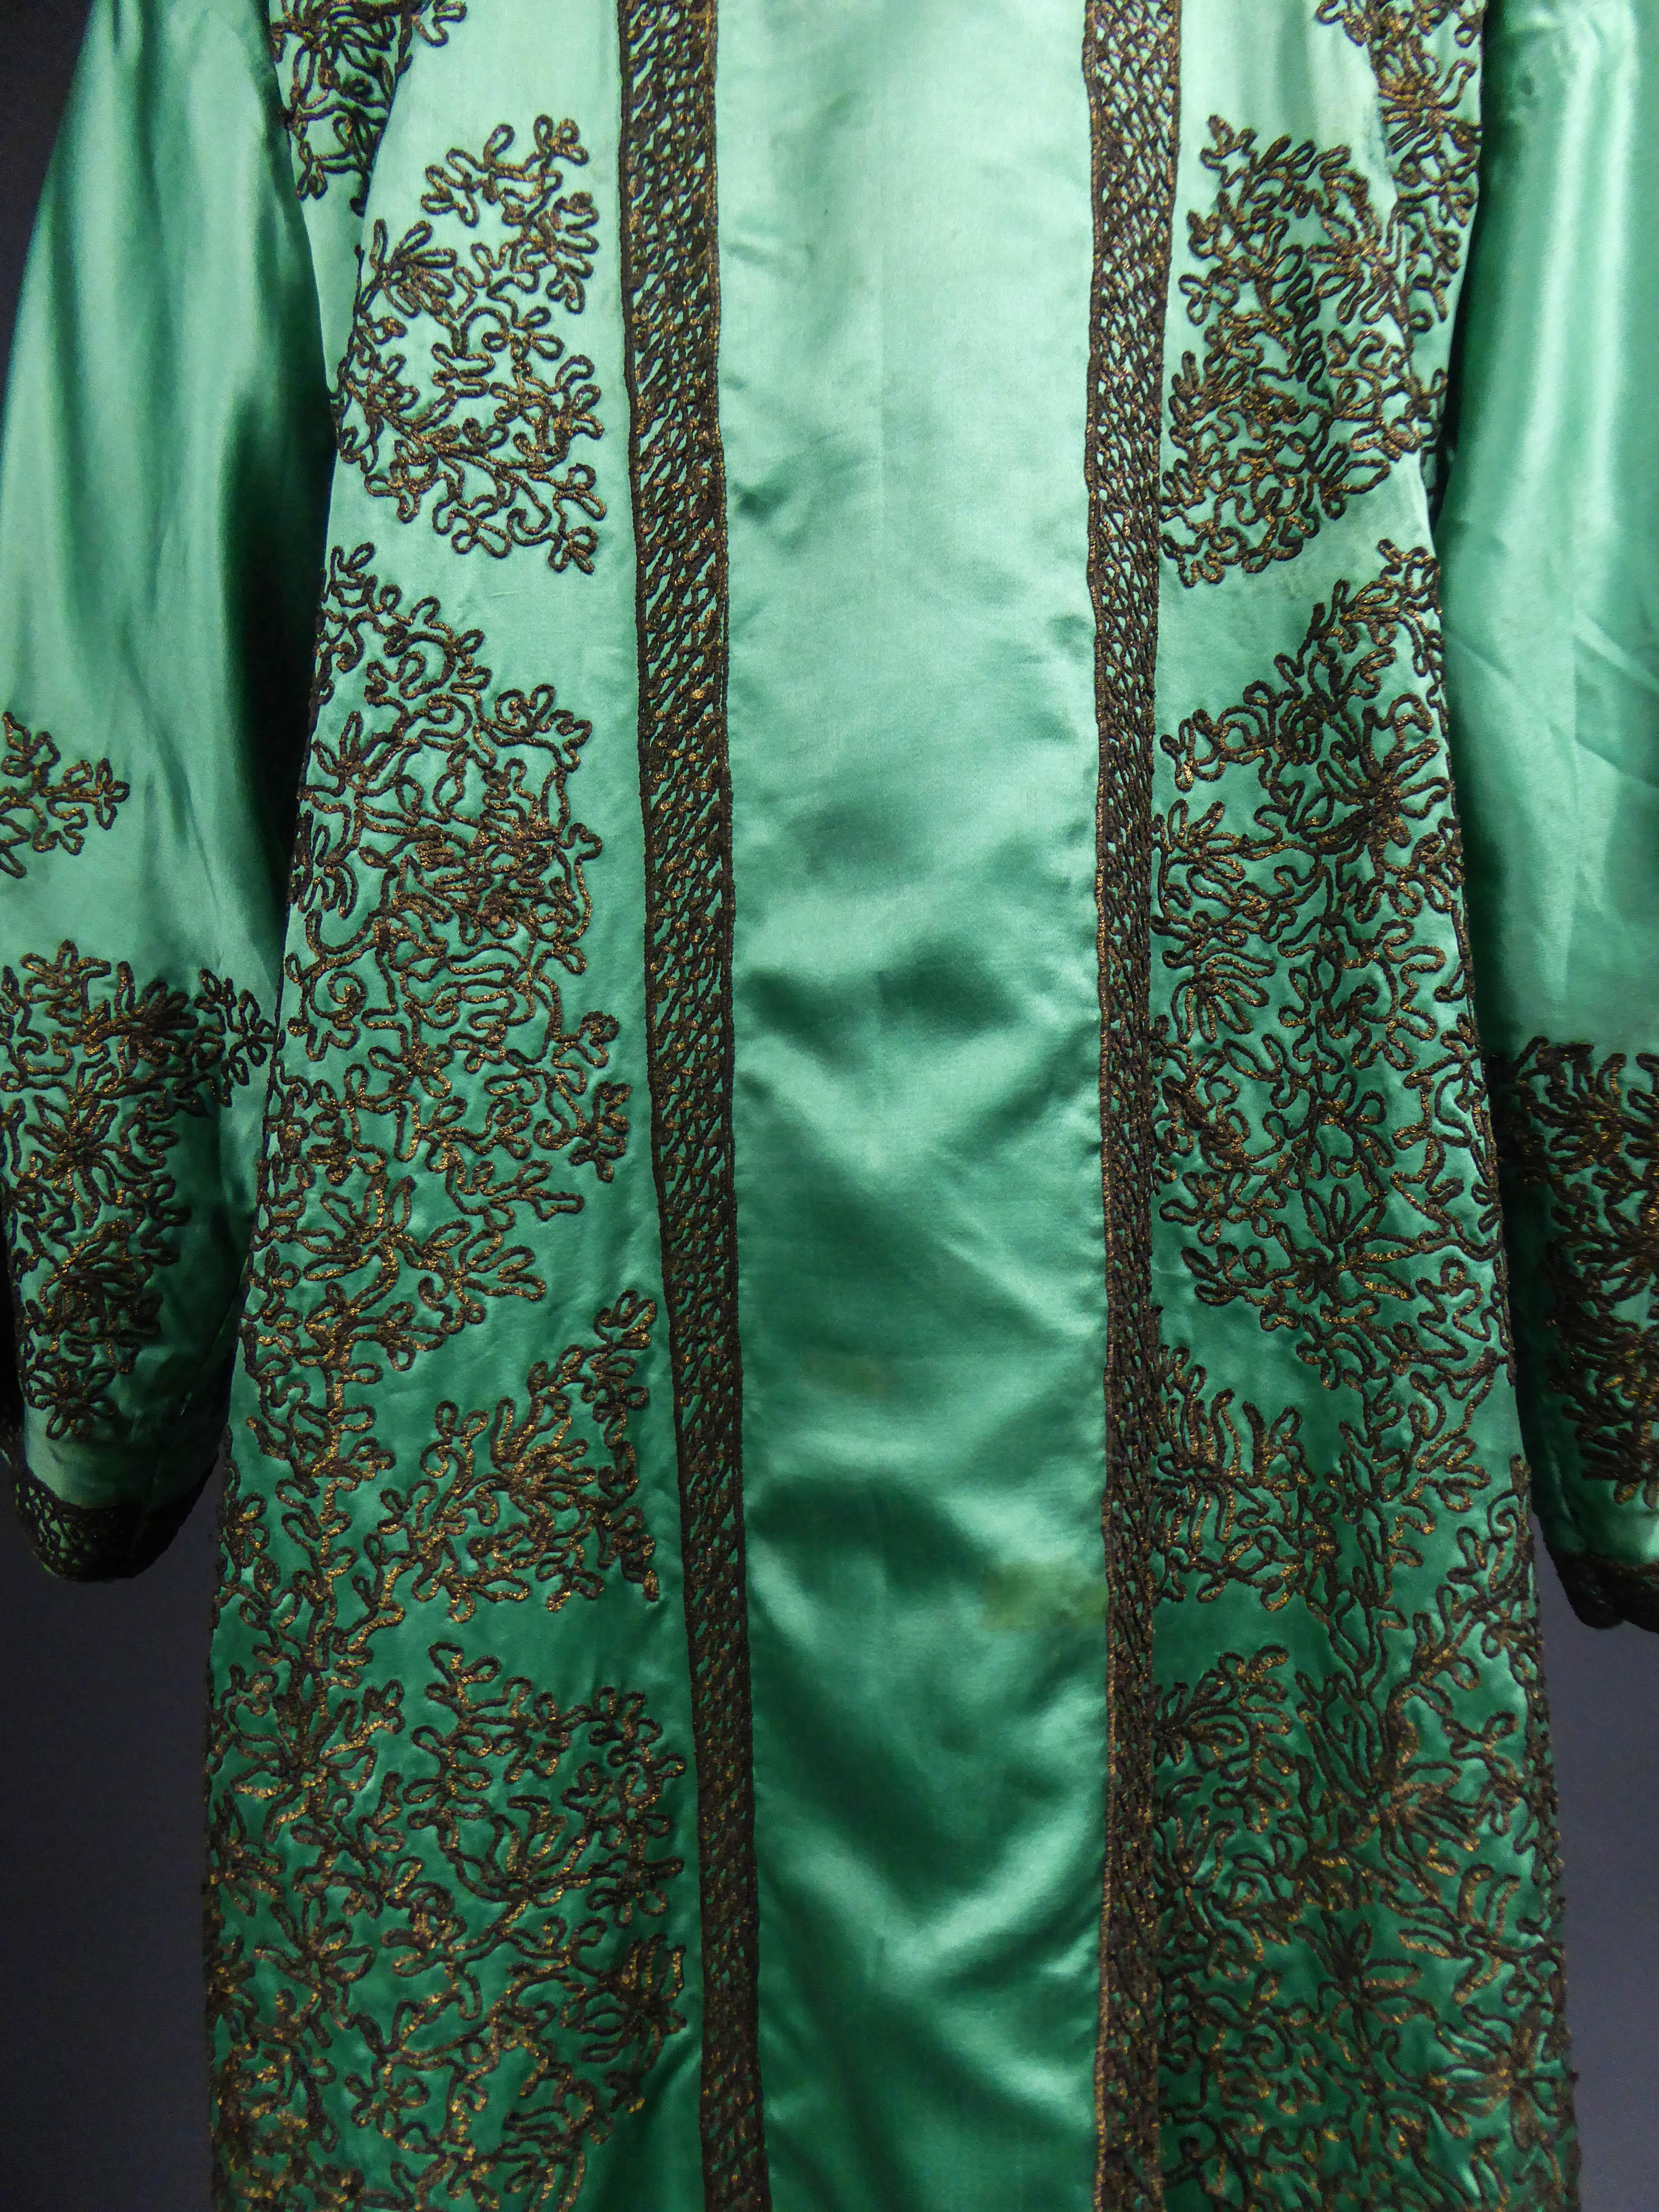 Babani Couture Kaftan or Party Kimono in green satin with appliqué, circa 1915 6